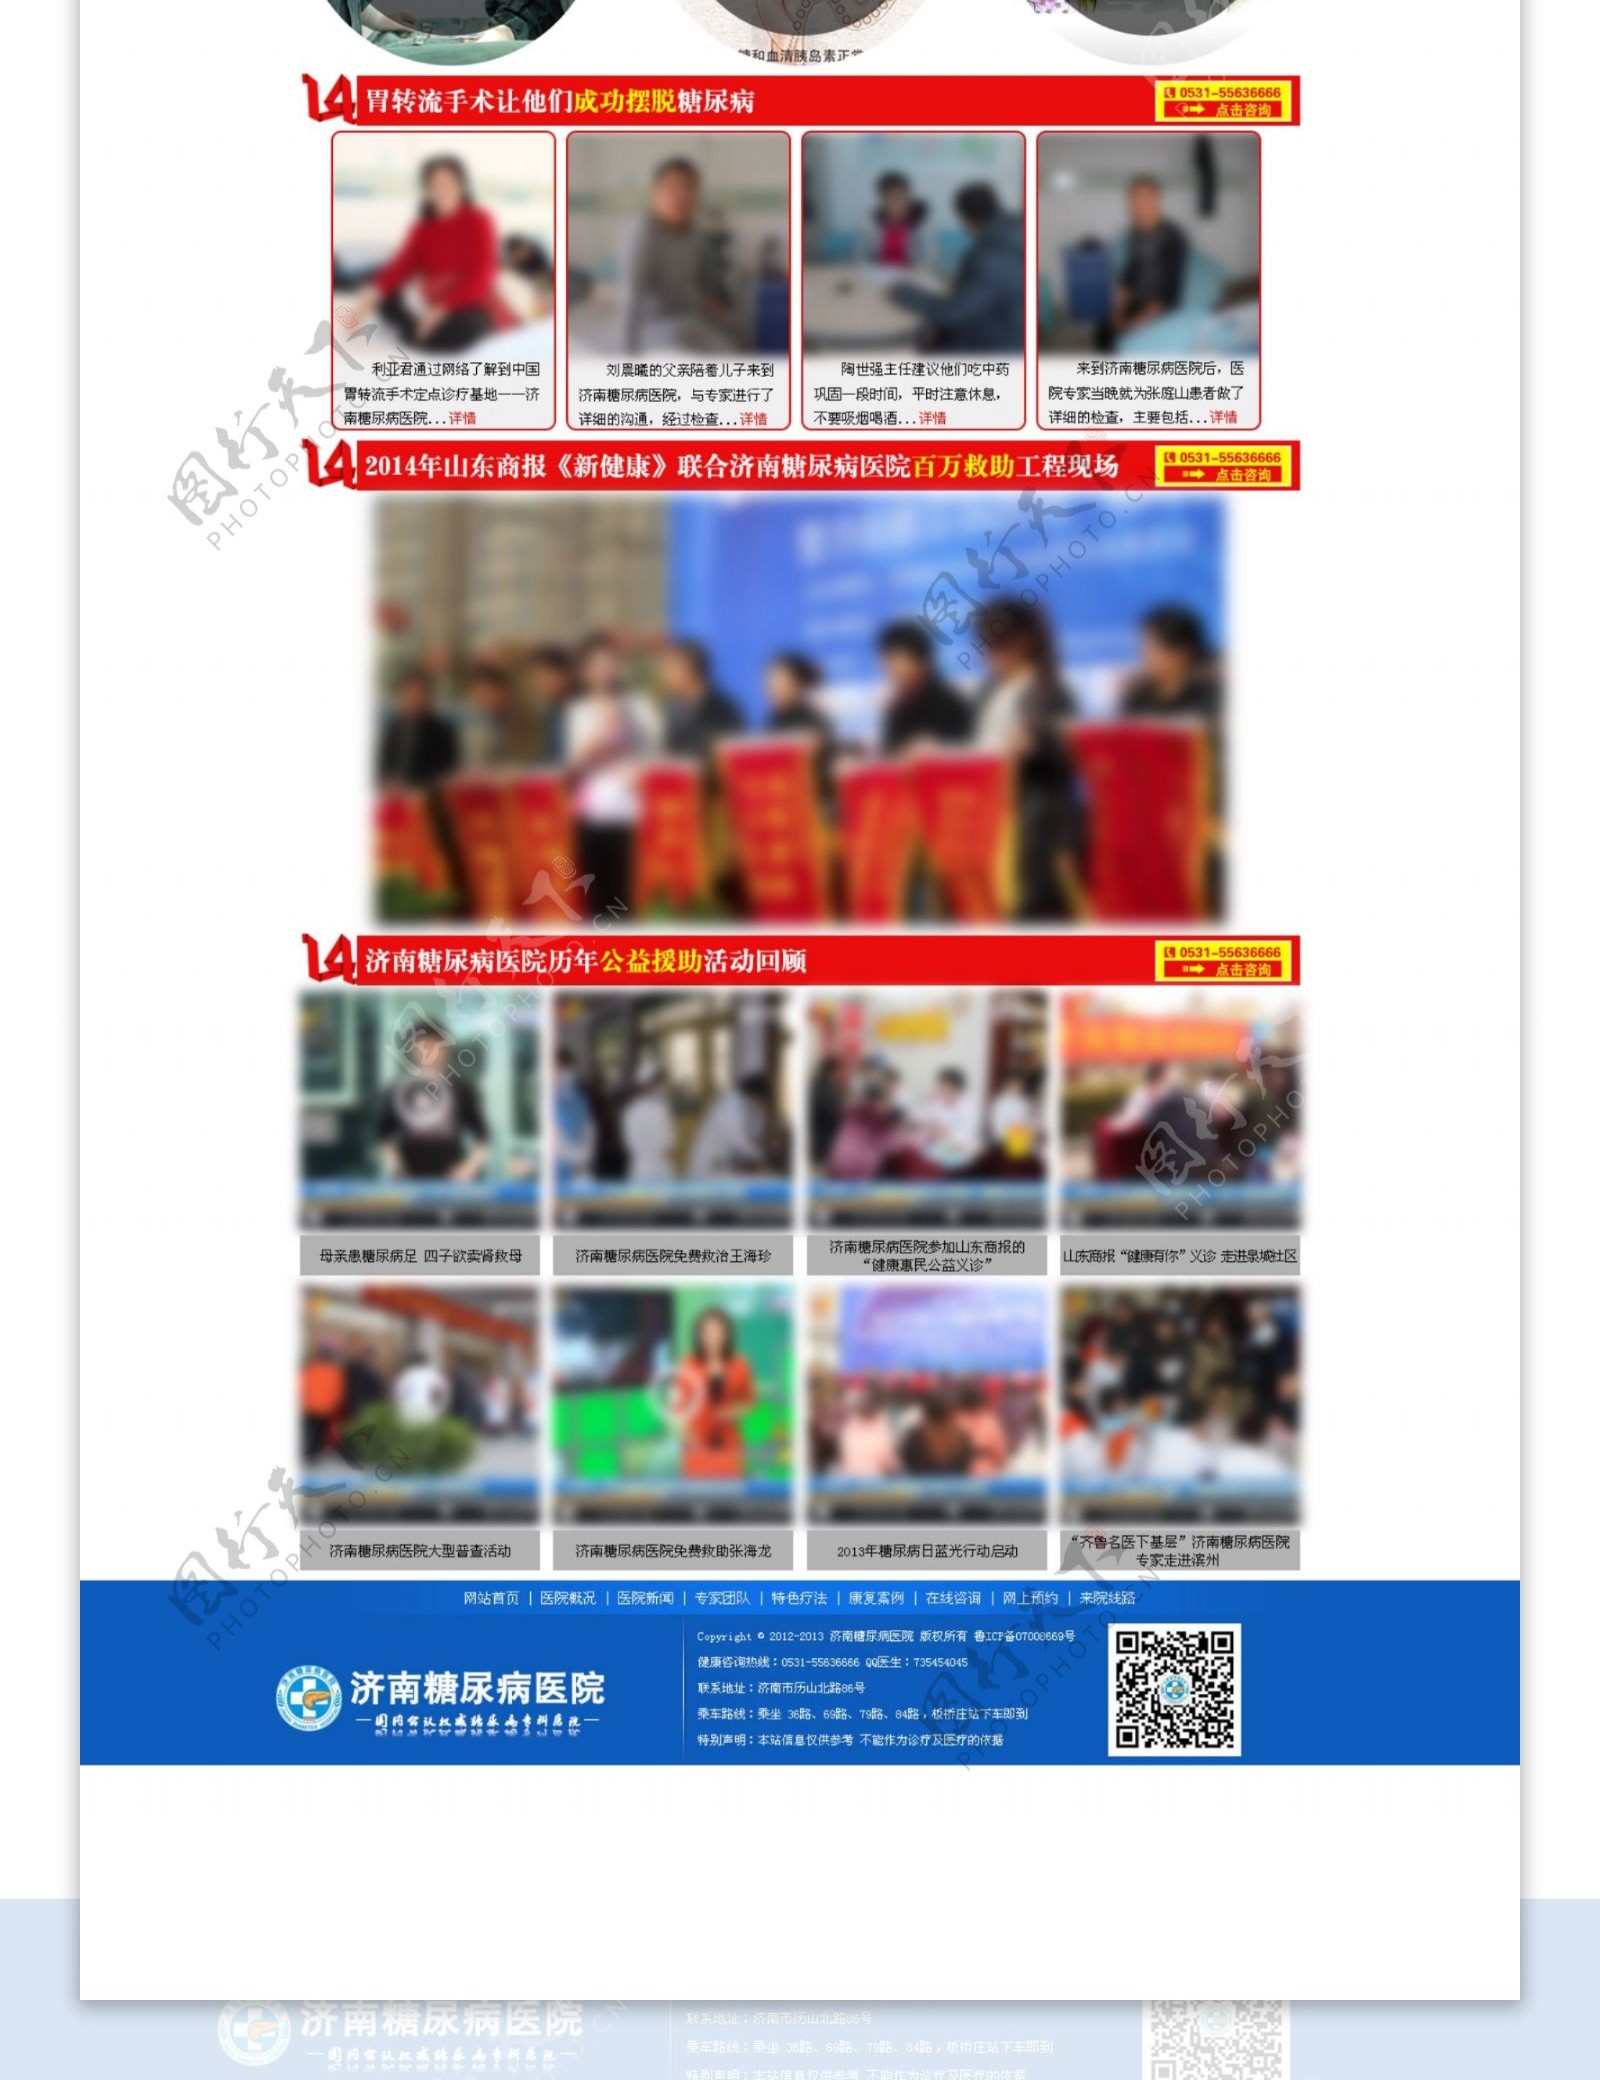 医院活动专题中文模板图片